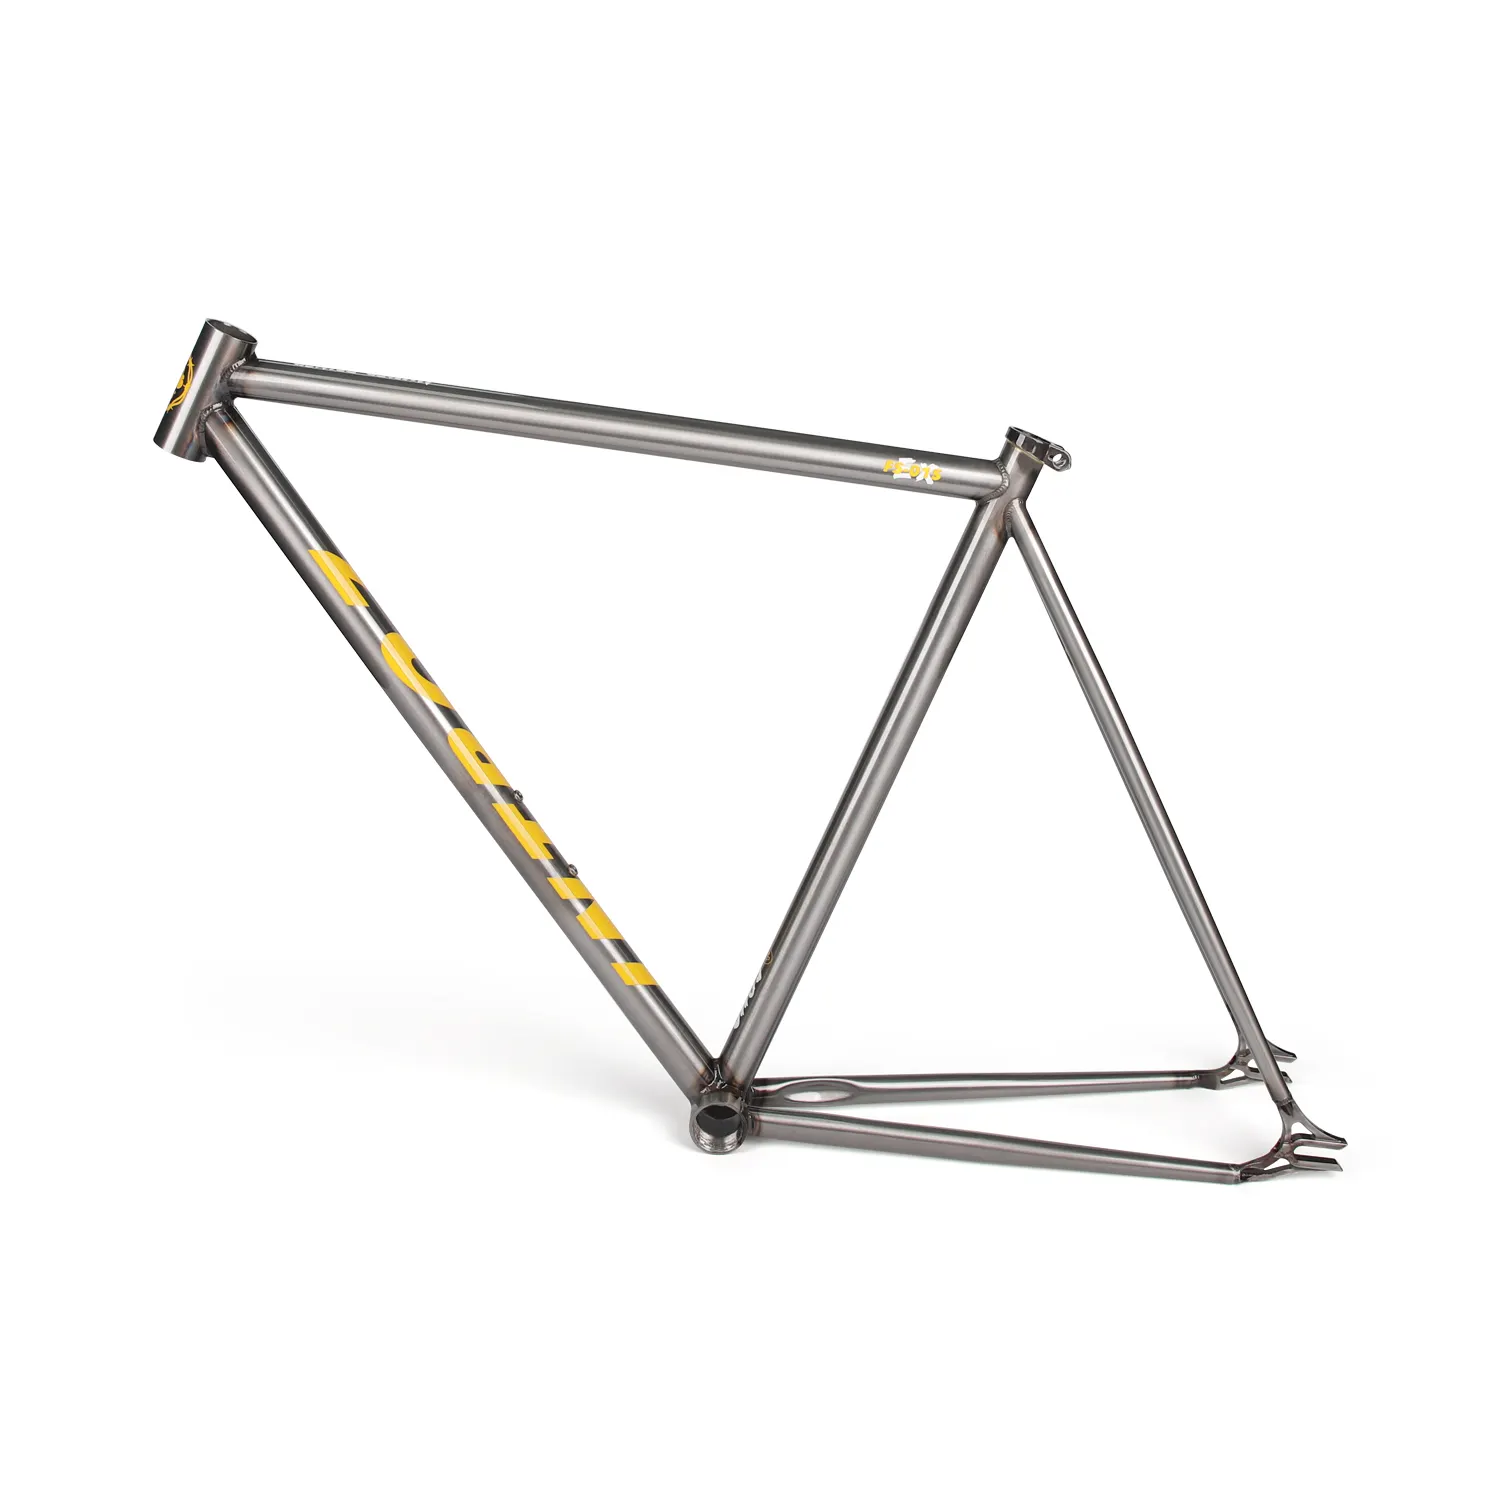 FM002 Aço Quadro de Bicicleta Peças de reposição para bicicleta 700C quadro de bicicleta de engrenagem fixa colorido quadro de aço de alto carbono com garfo